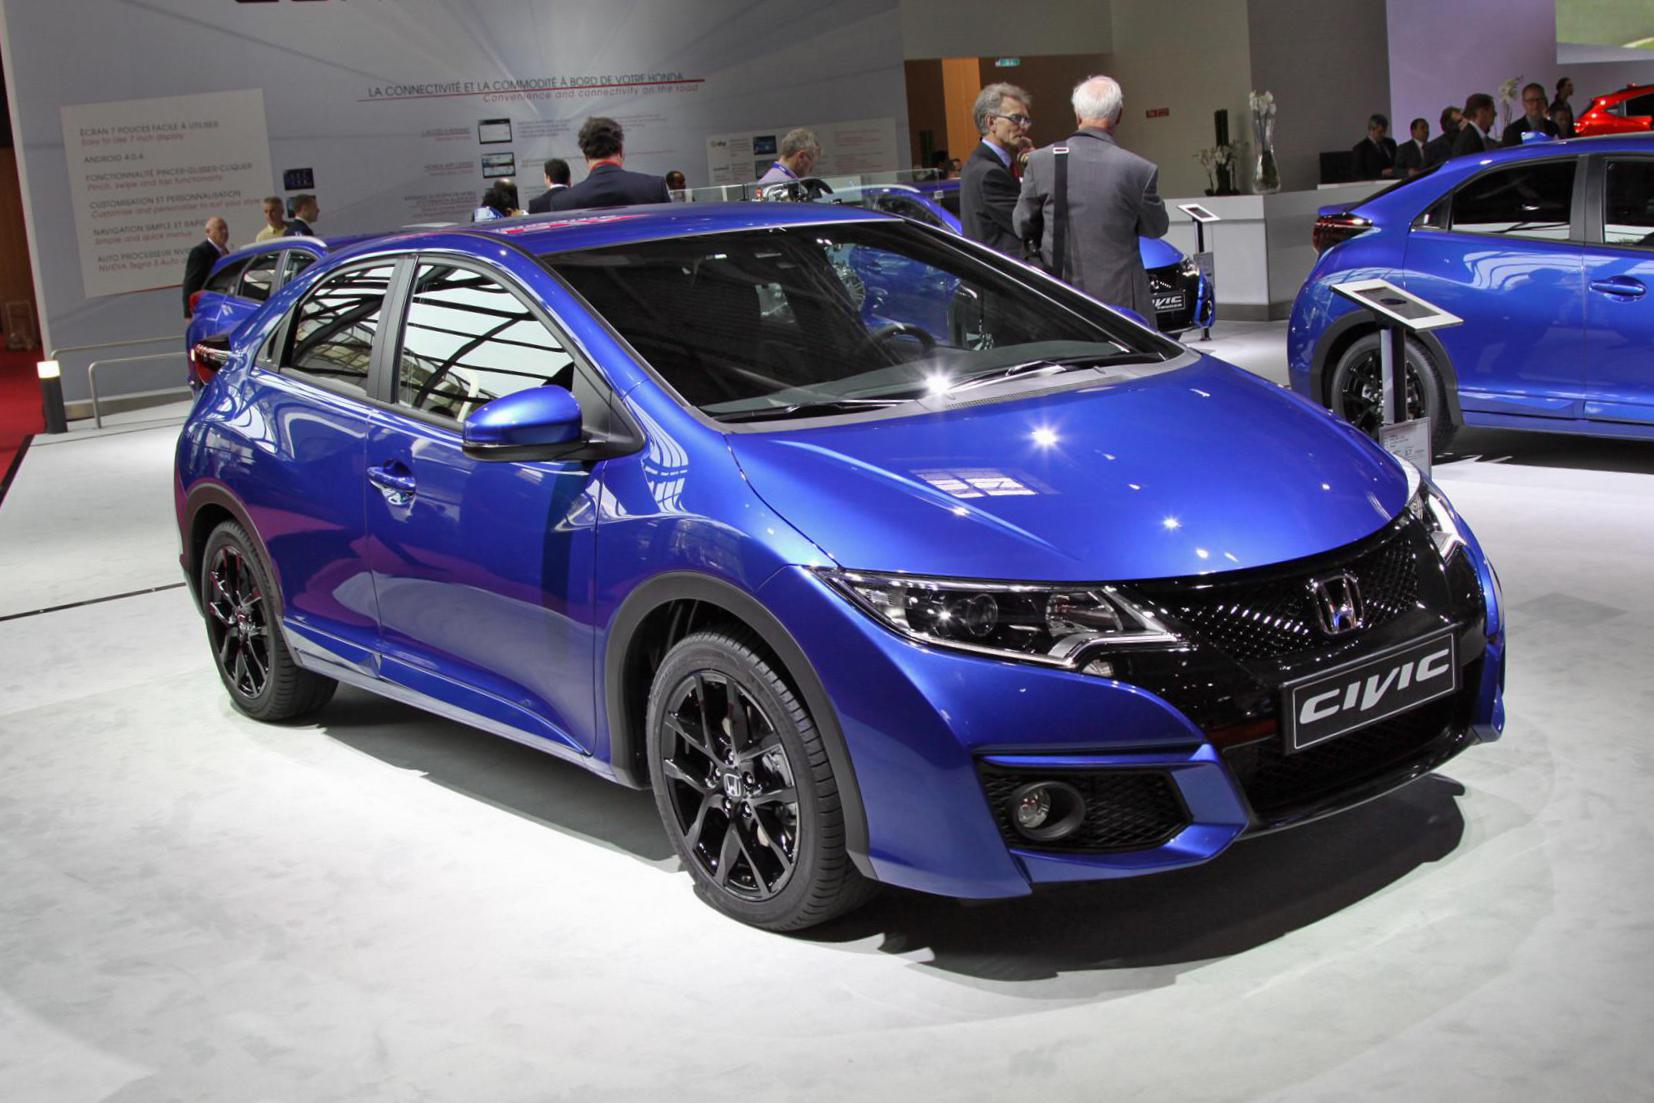 Honda Civic 5D review 2015